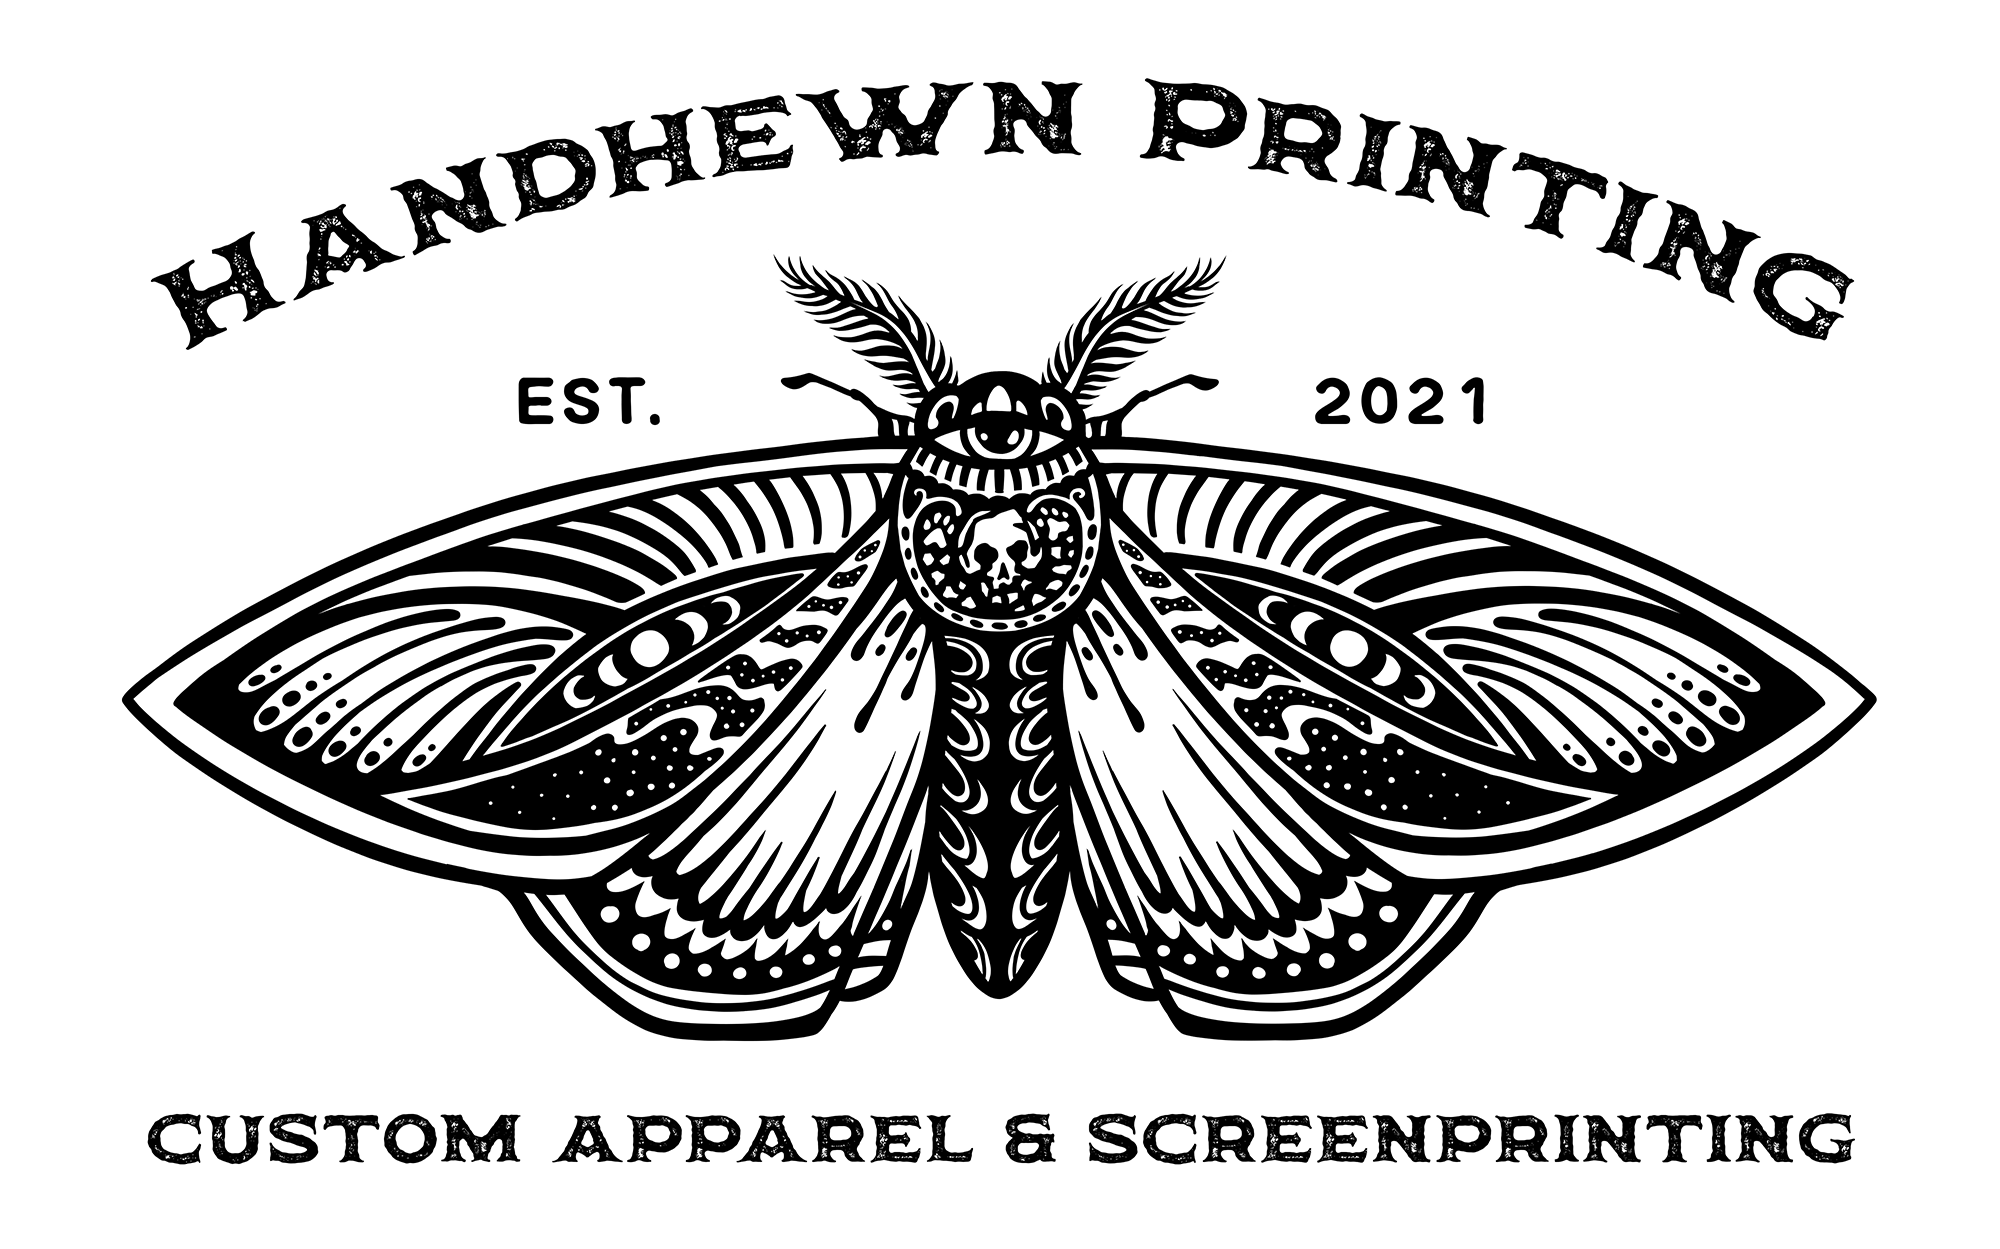 337-vintage-gothic-tarot-moth-handhewn-printing-logo-16520809765197.png